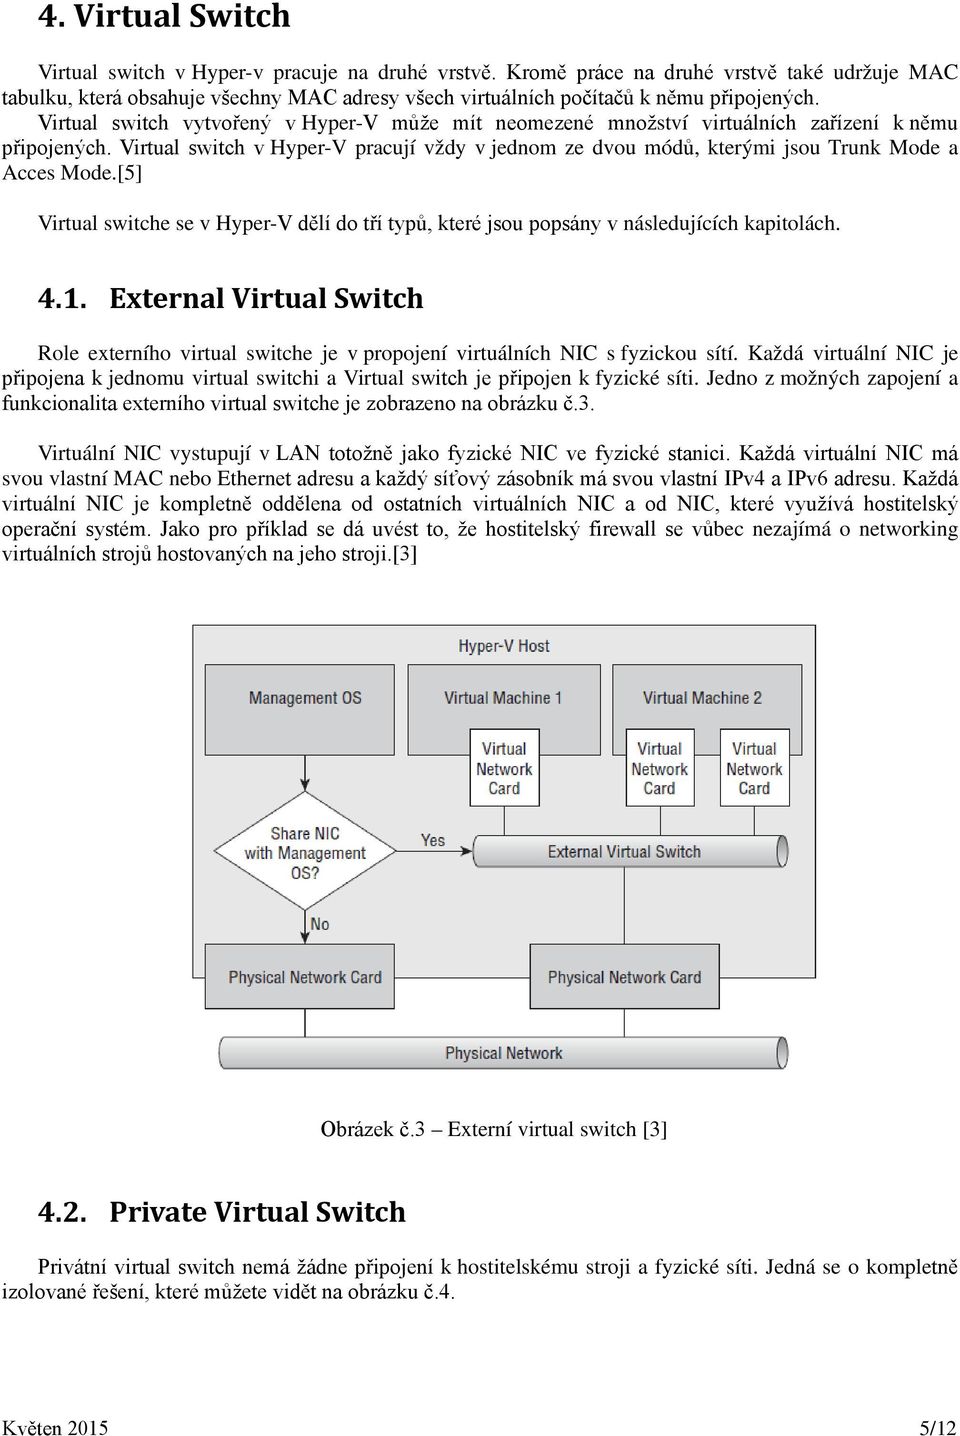 Virtual switch vytvořený v Hyper-V může mít neomezené množství virtuálních zařízení k němu připojených.